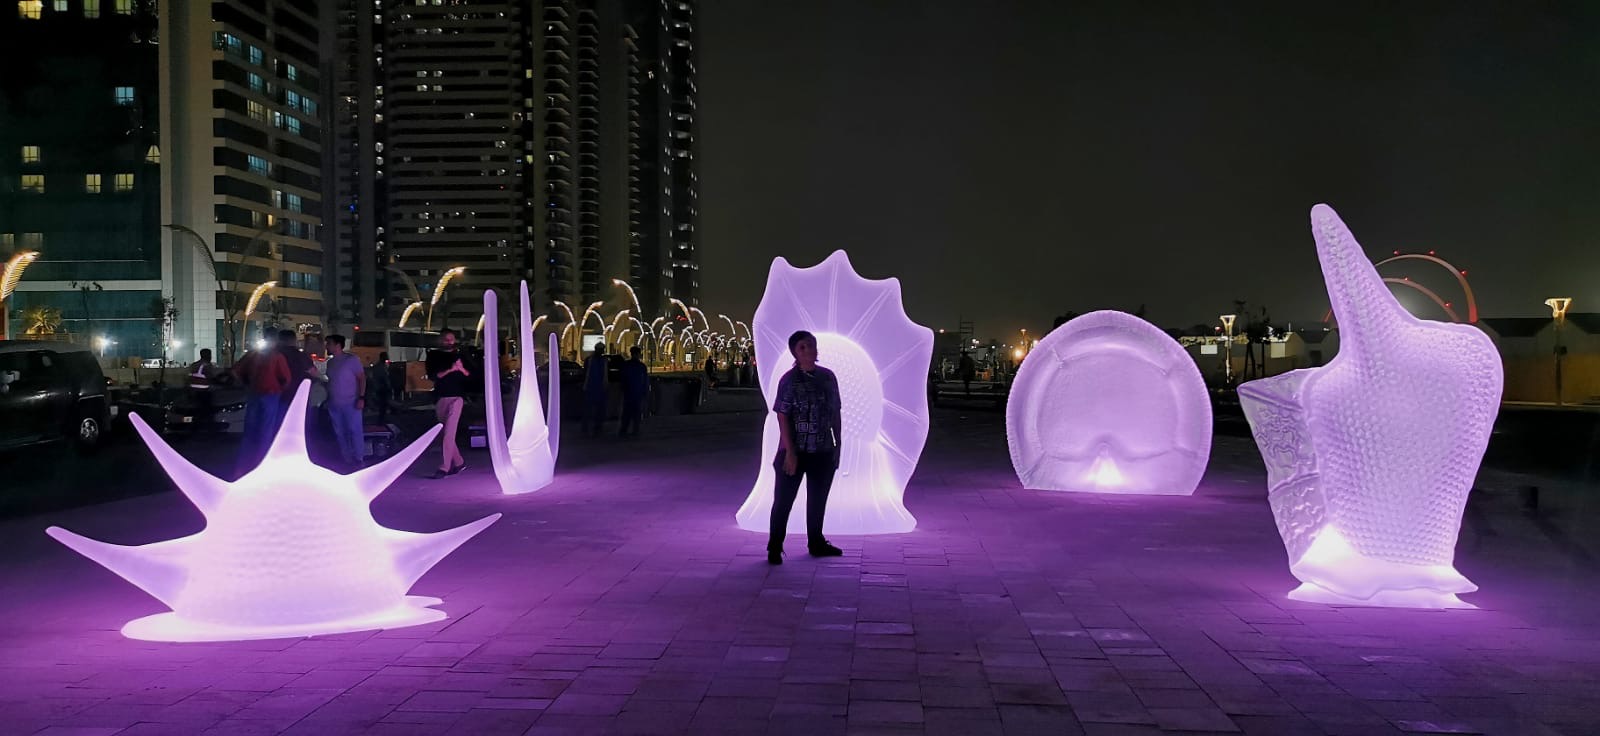 Sculture illuminate di notte con una persona davanti. Le sculture sono immerse nella luce violetta. In secondo piano ci sono dei grattacieli. Alcune finestre sono illuminate.